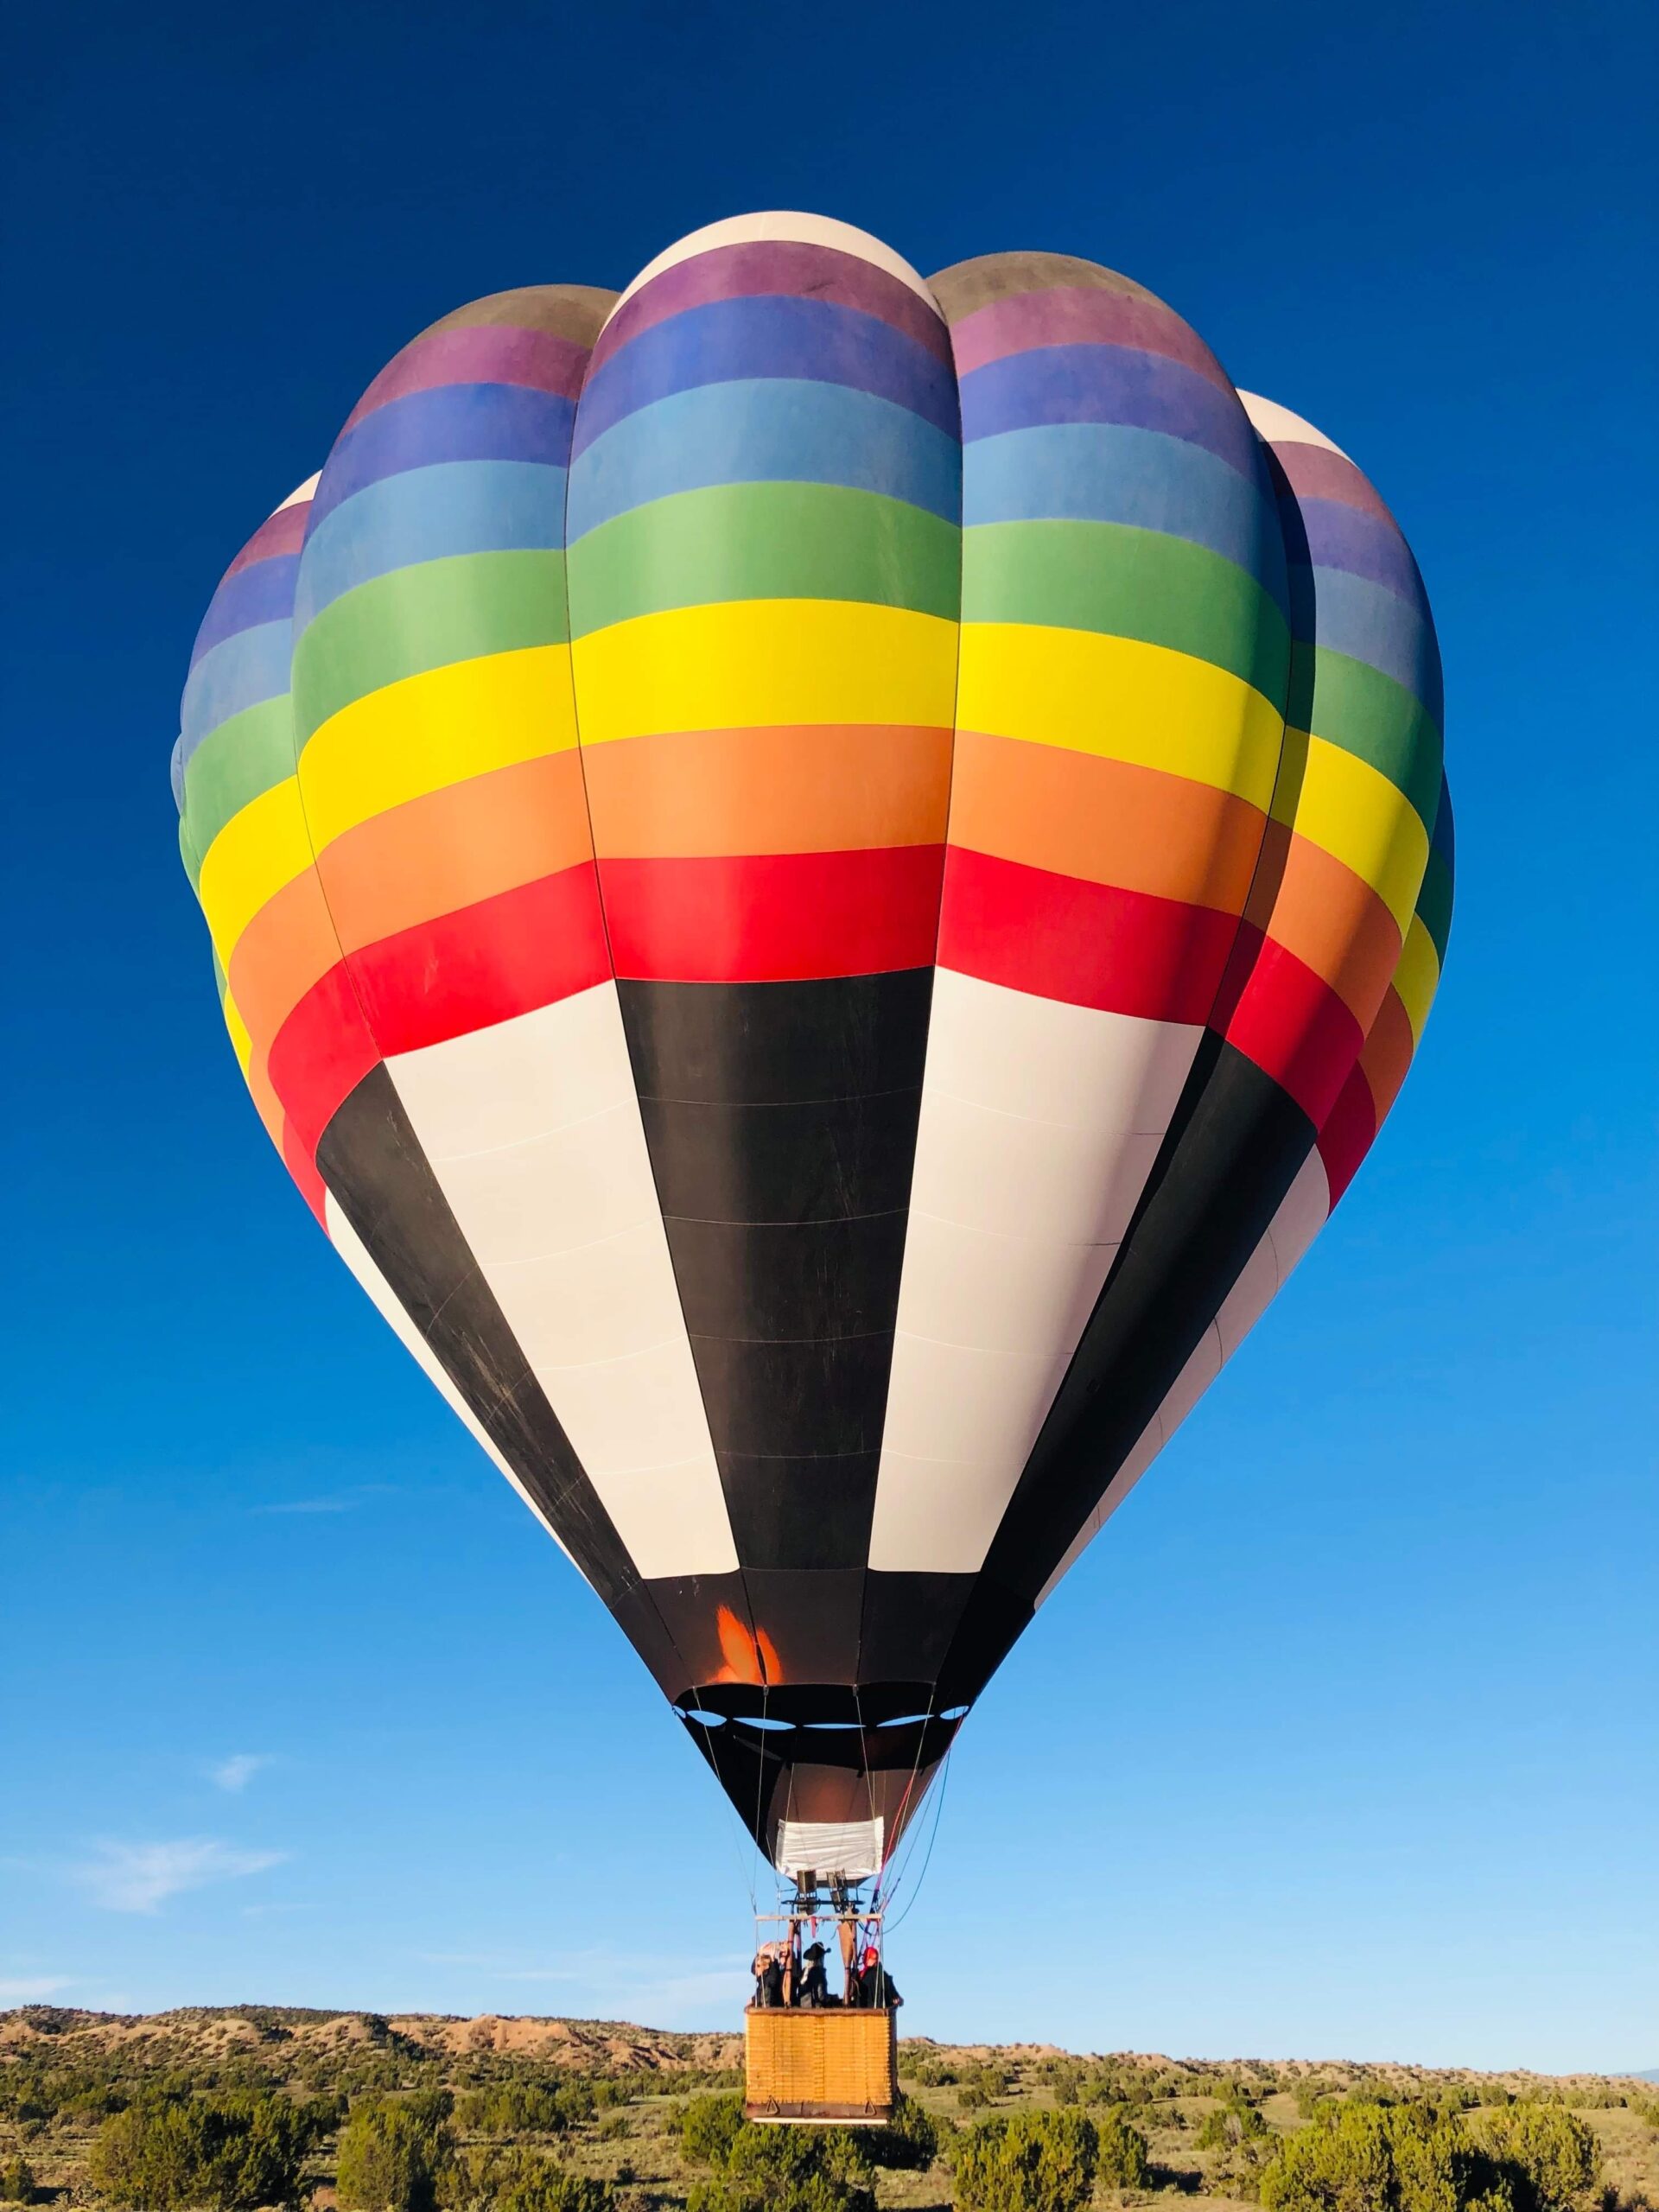 Hot Air Balloon Tour in Santa Fe, NM